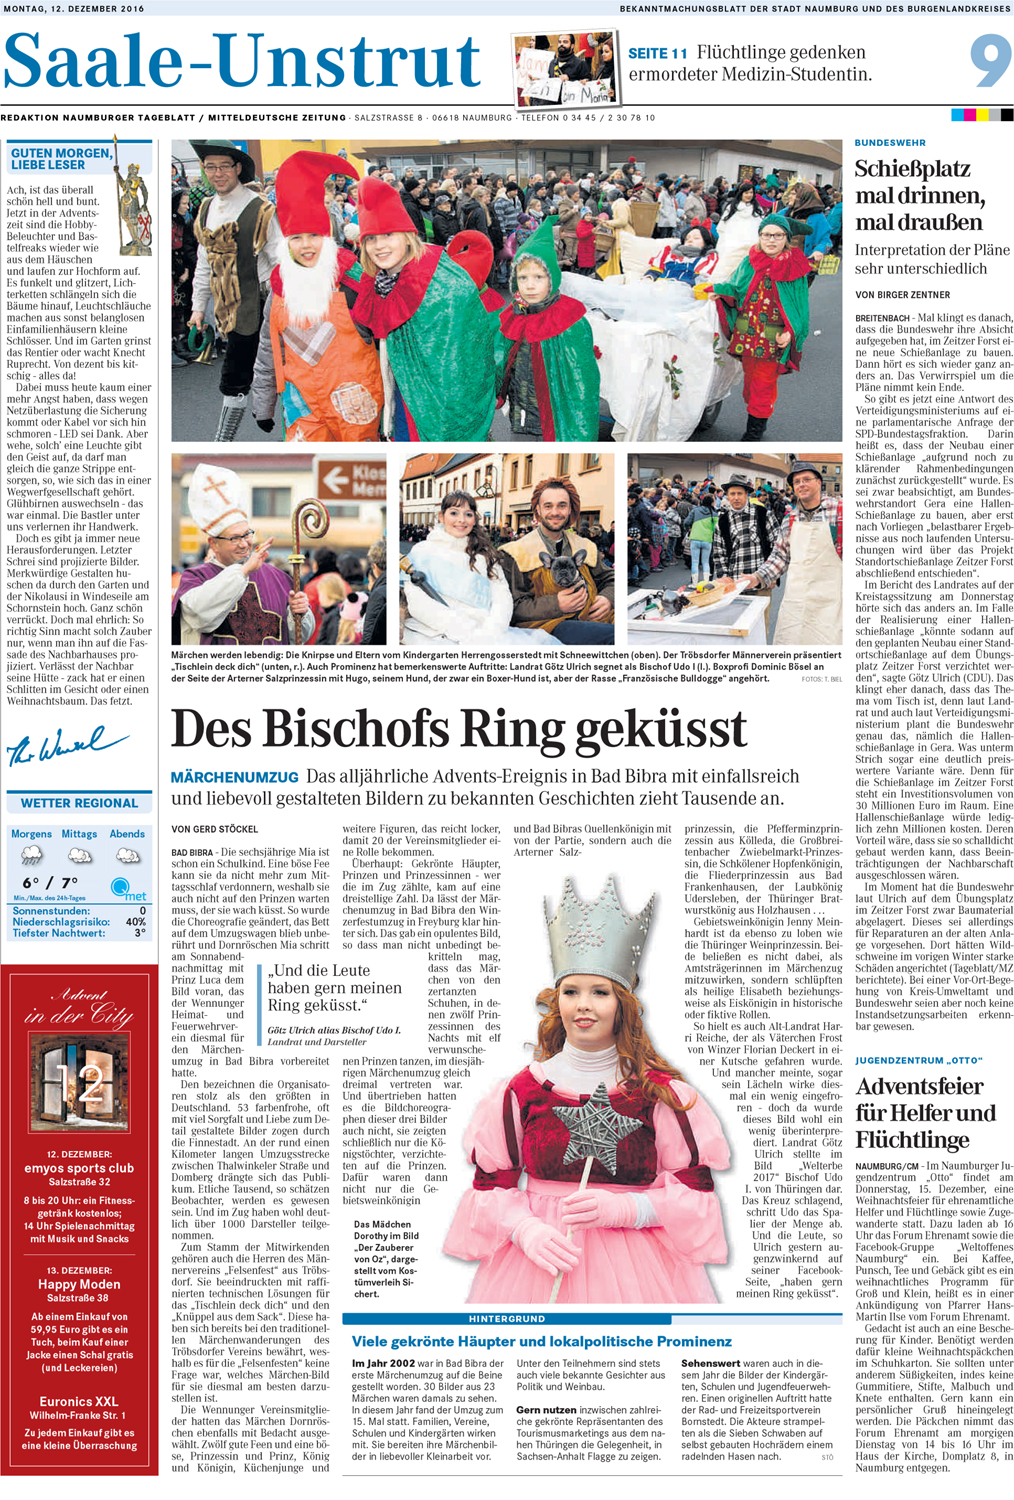 2016-12-12_Mitteldeutsche Zeitung.jpg